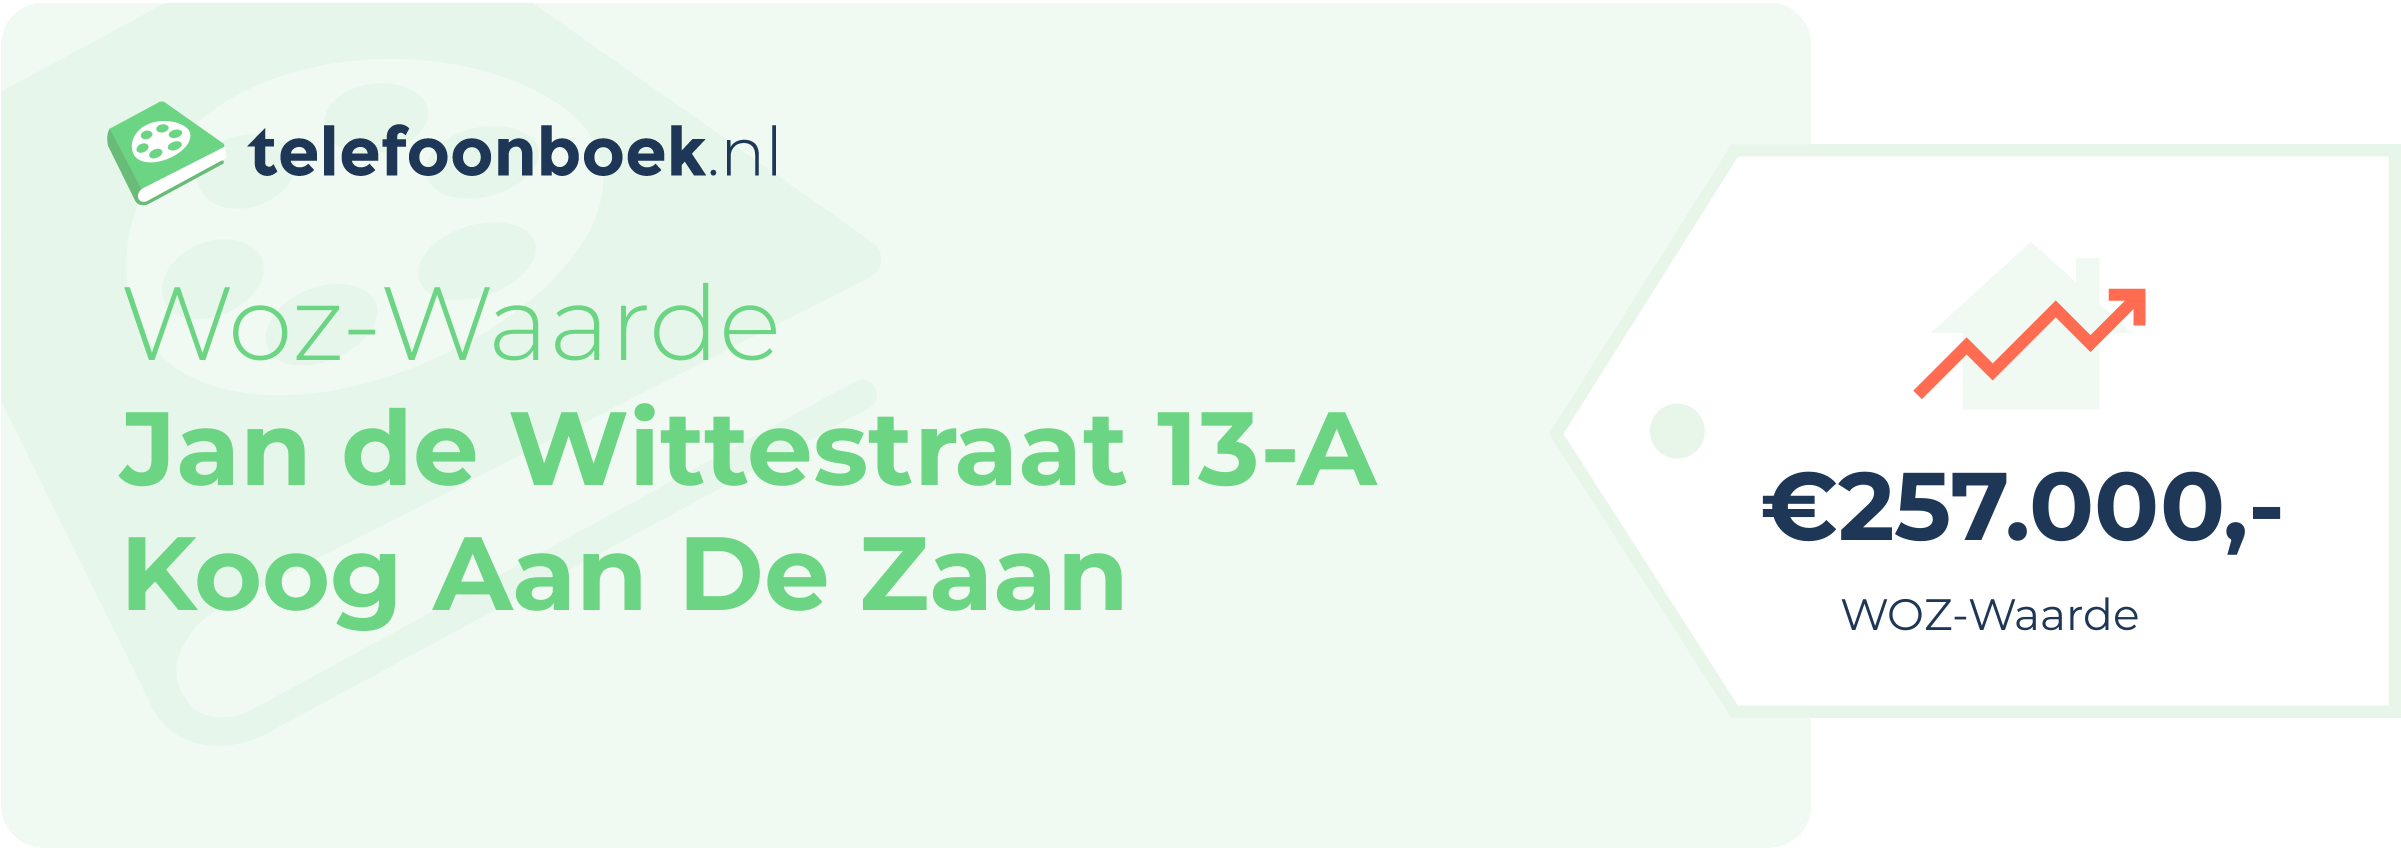 WOZ-waarde Jan De Wittestraat 13-A Koog Aan De Zaan